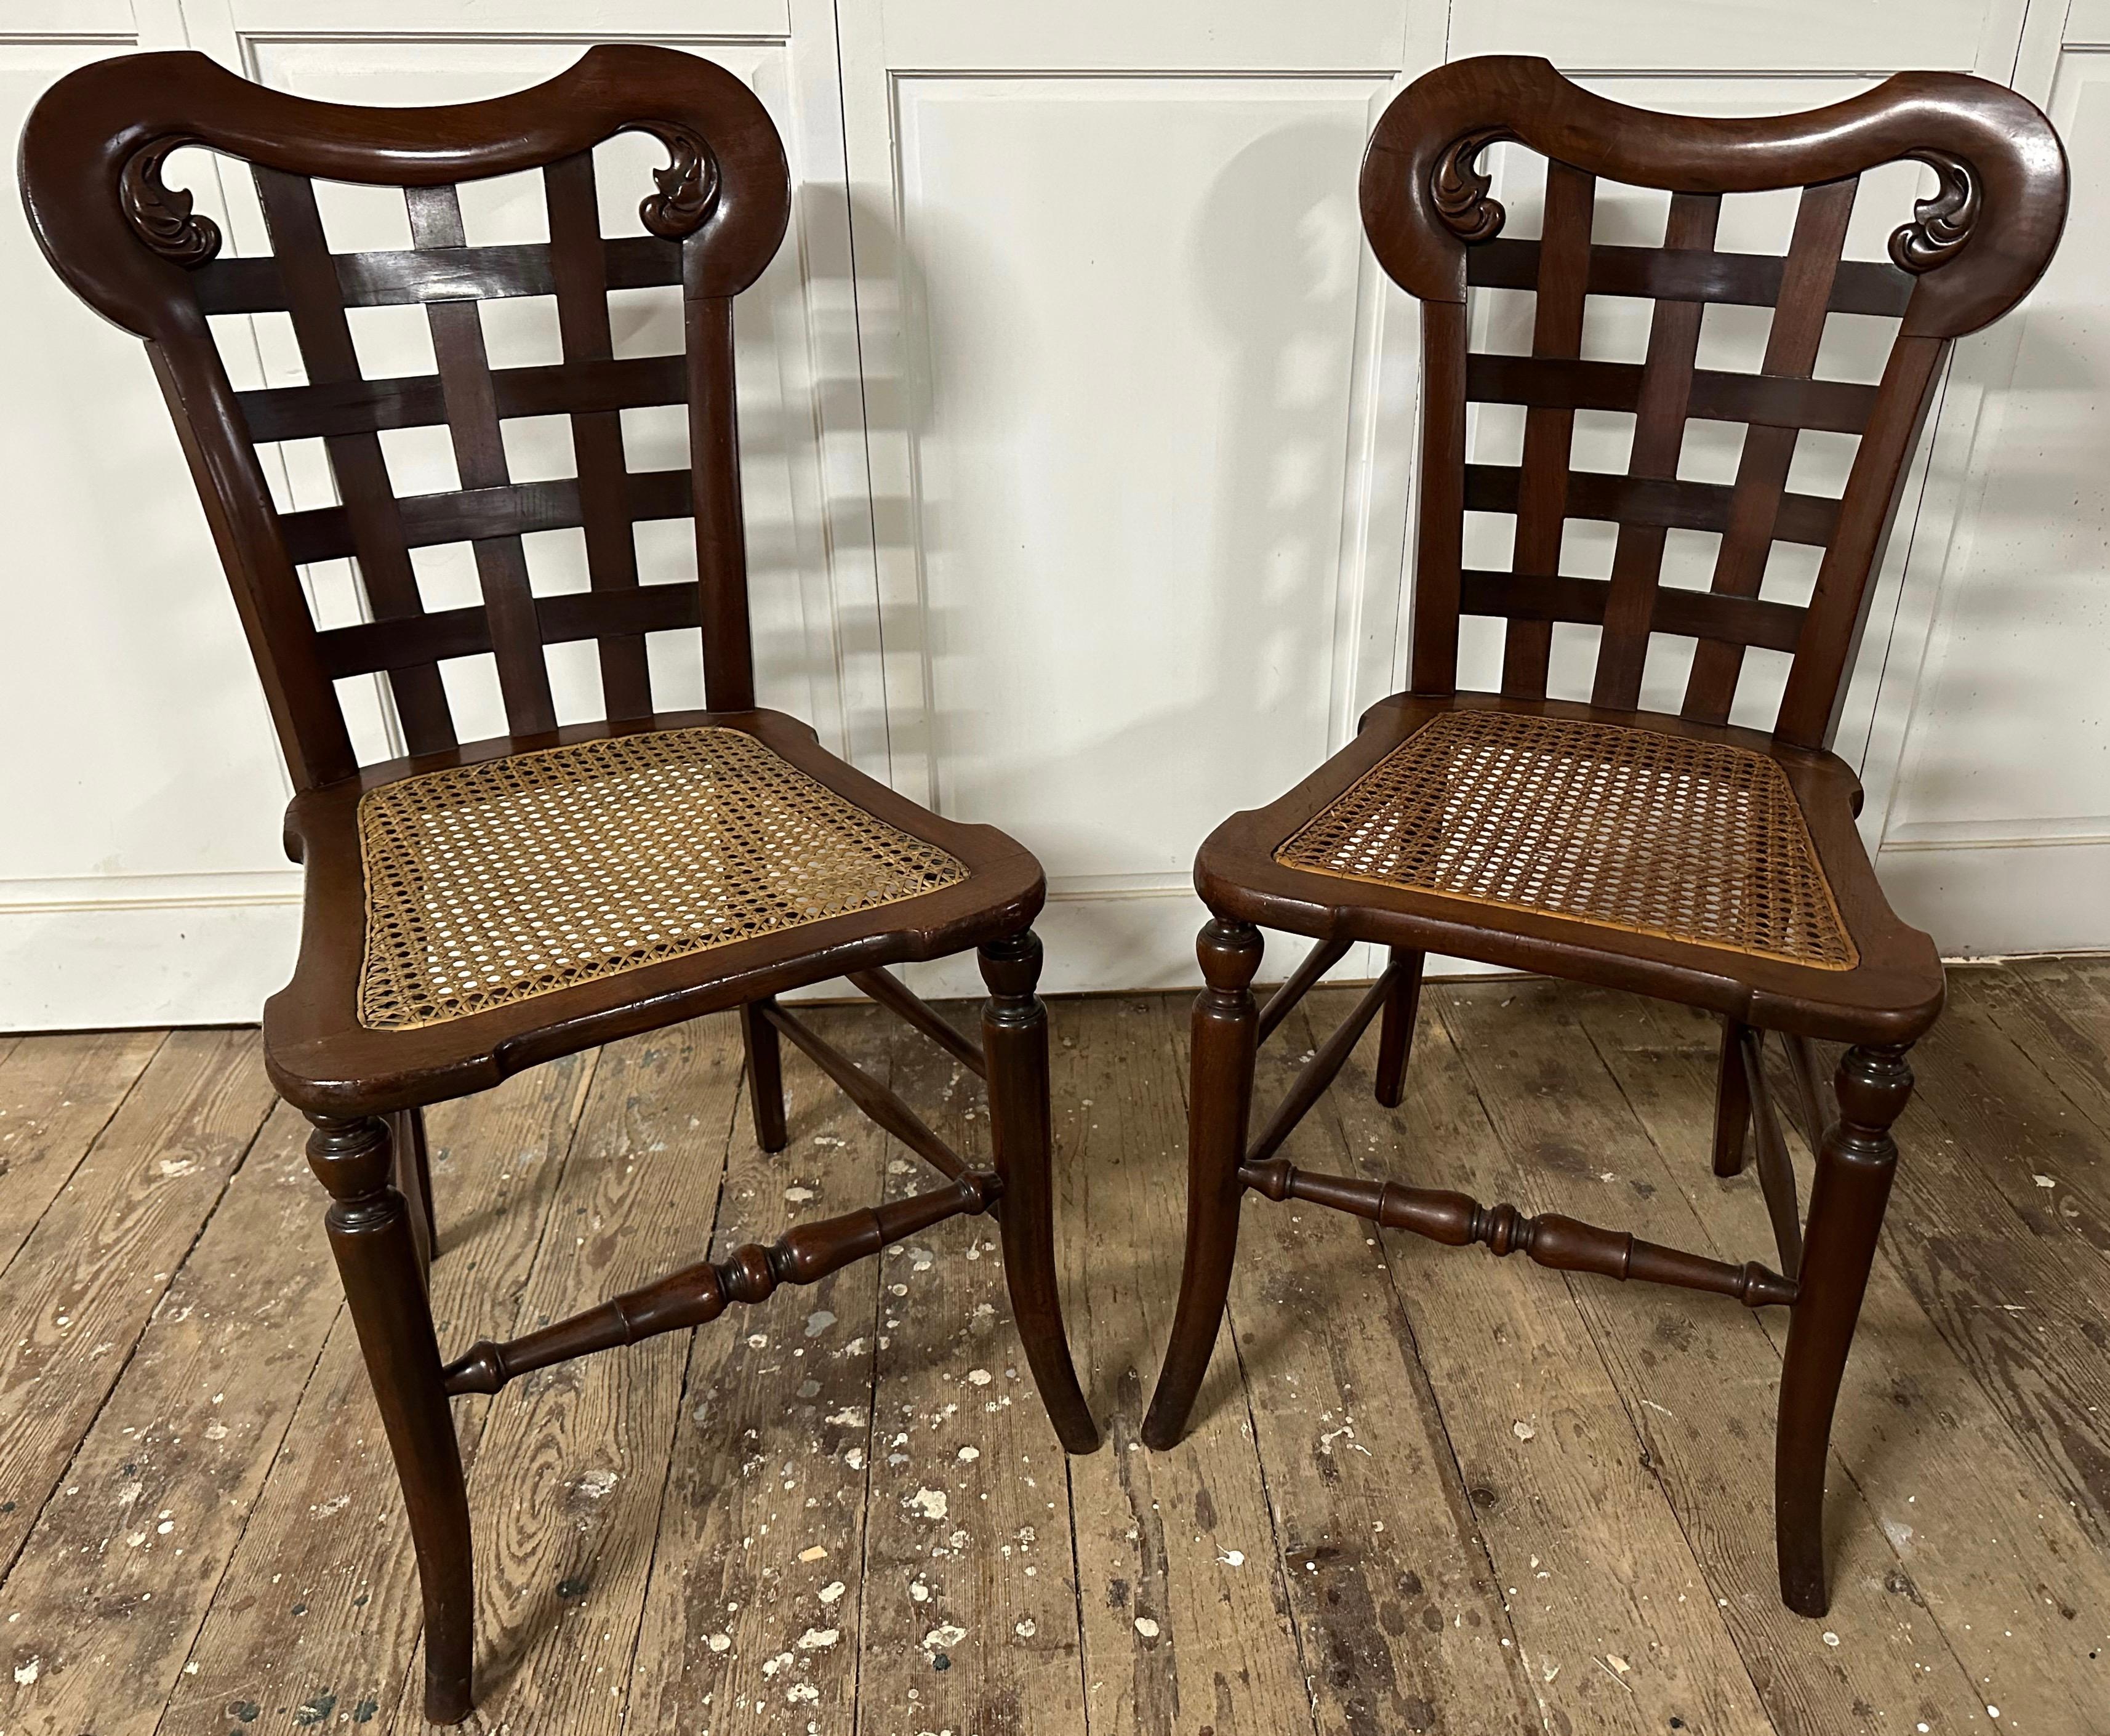 Une paire unique et inhabituelle de chaises d'appoint en acajou d'inspiration Regency du 20e siècle avec des sièges cannelés et un dossier en bois tressé sculpté.  Utilisez ces chaises comme sièges supplémentaires ou chaises d'appoint dans n'importe